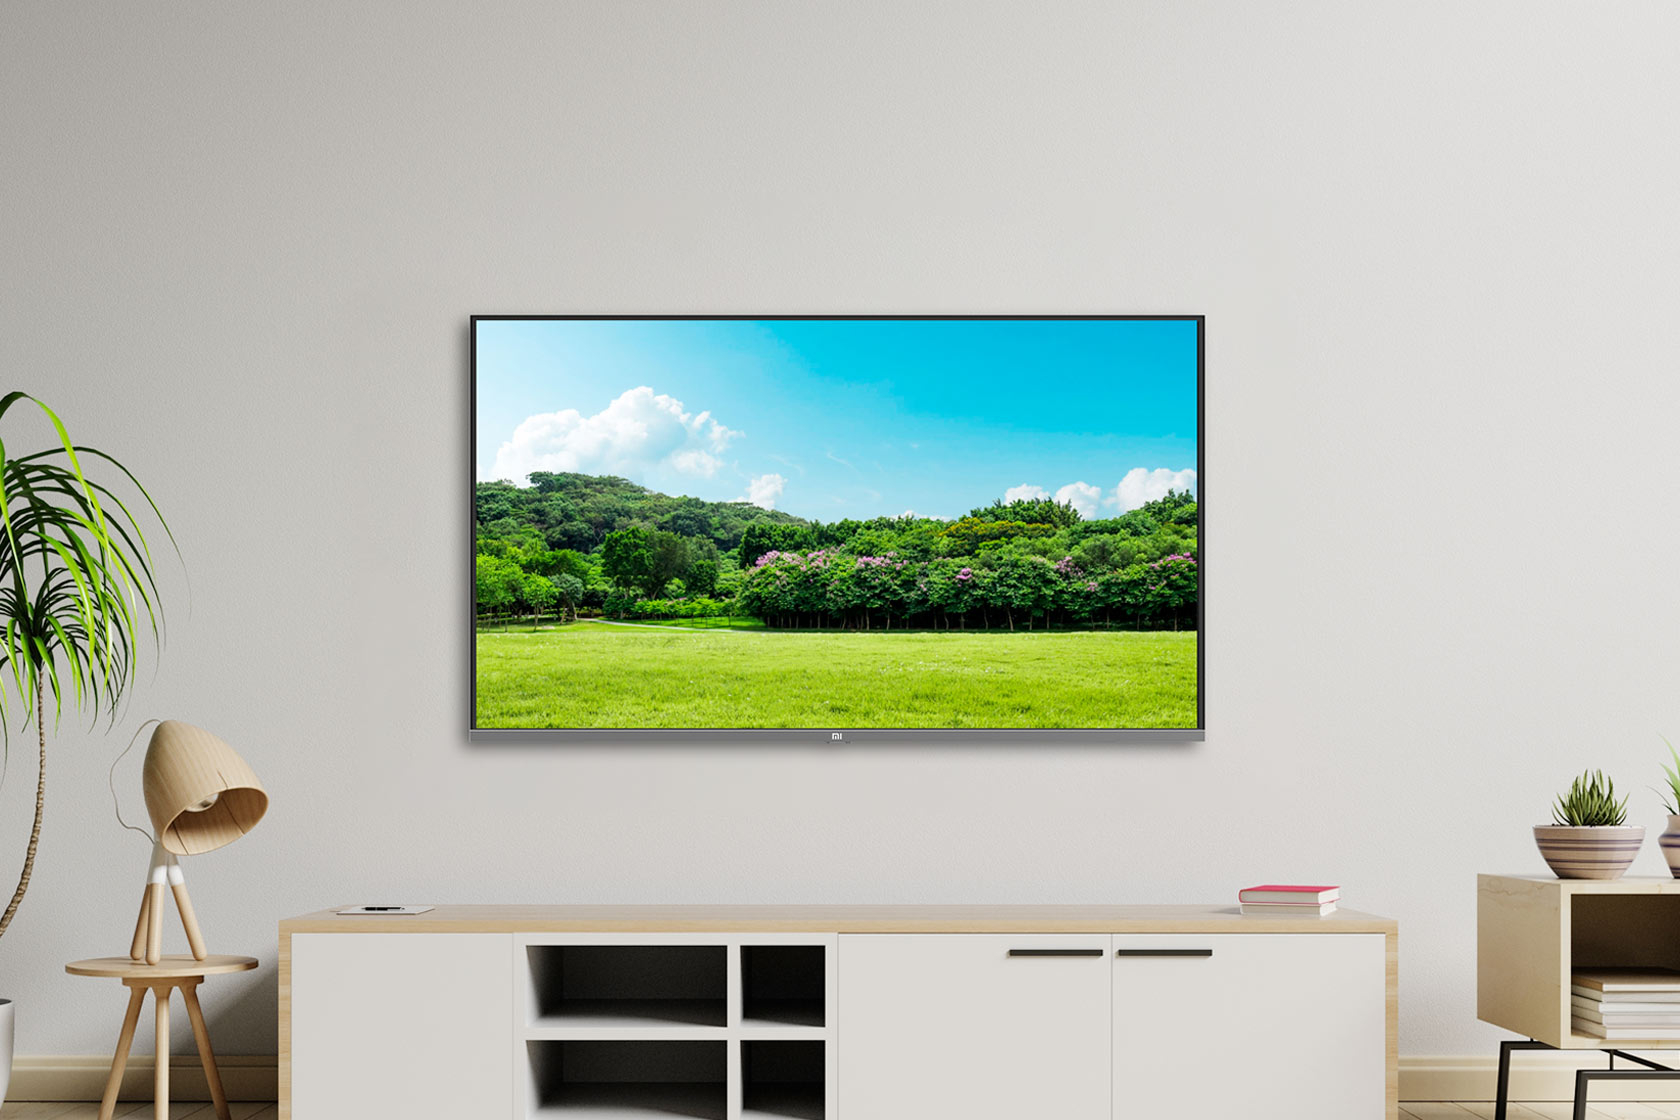 Телевизор Xiaomi Mi Tv 4a 32 Характеристики